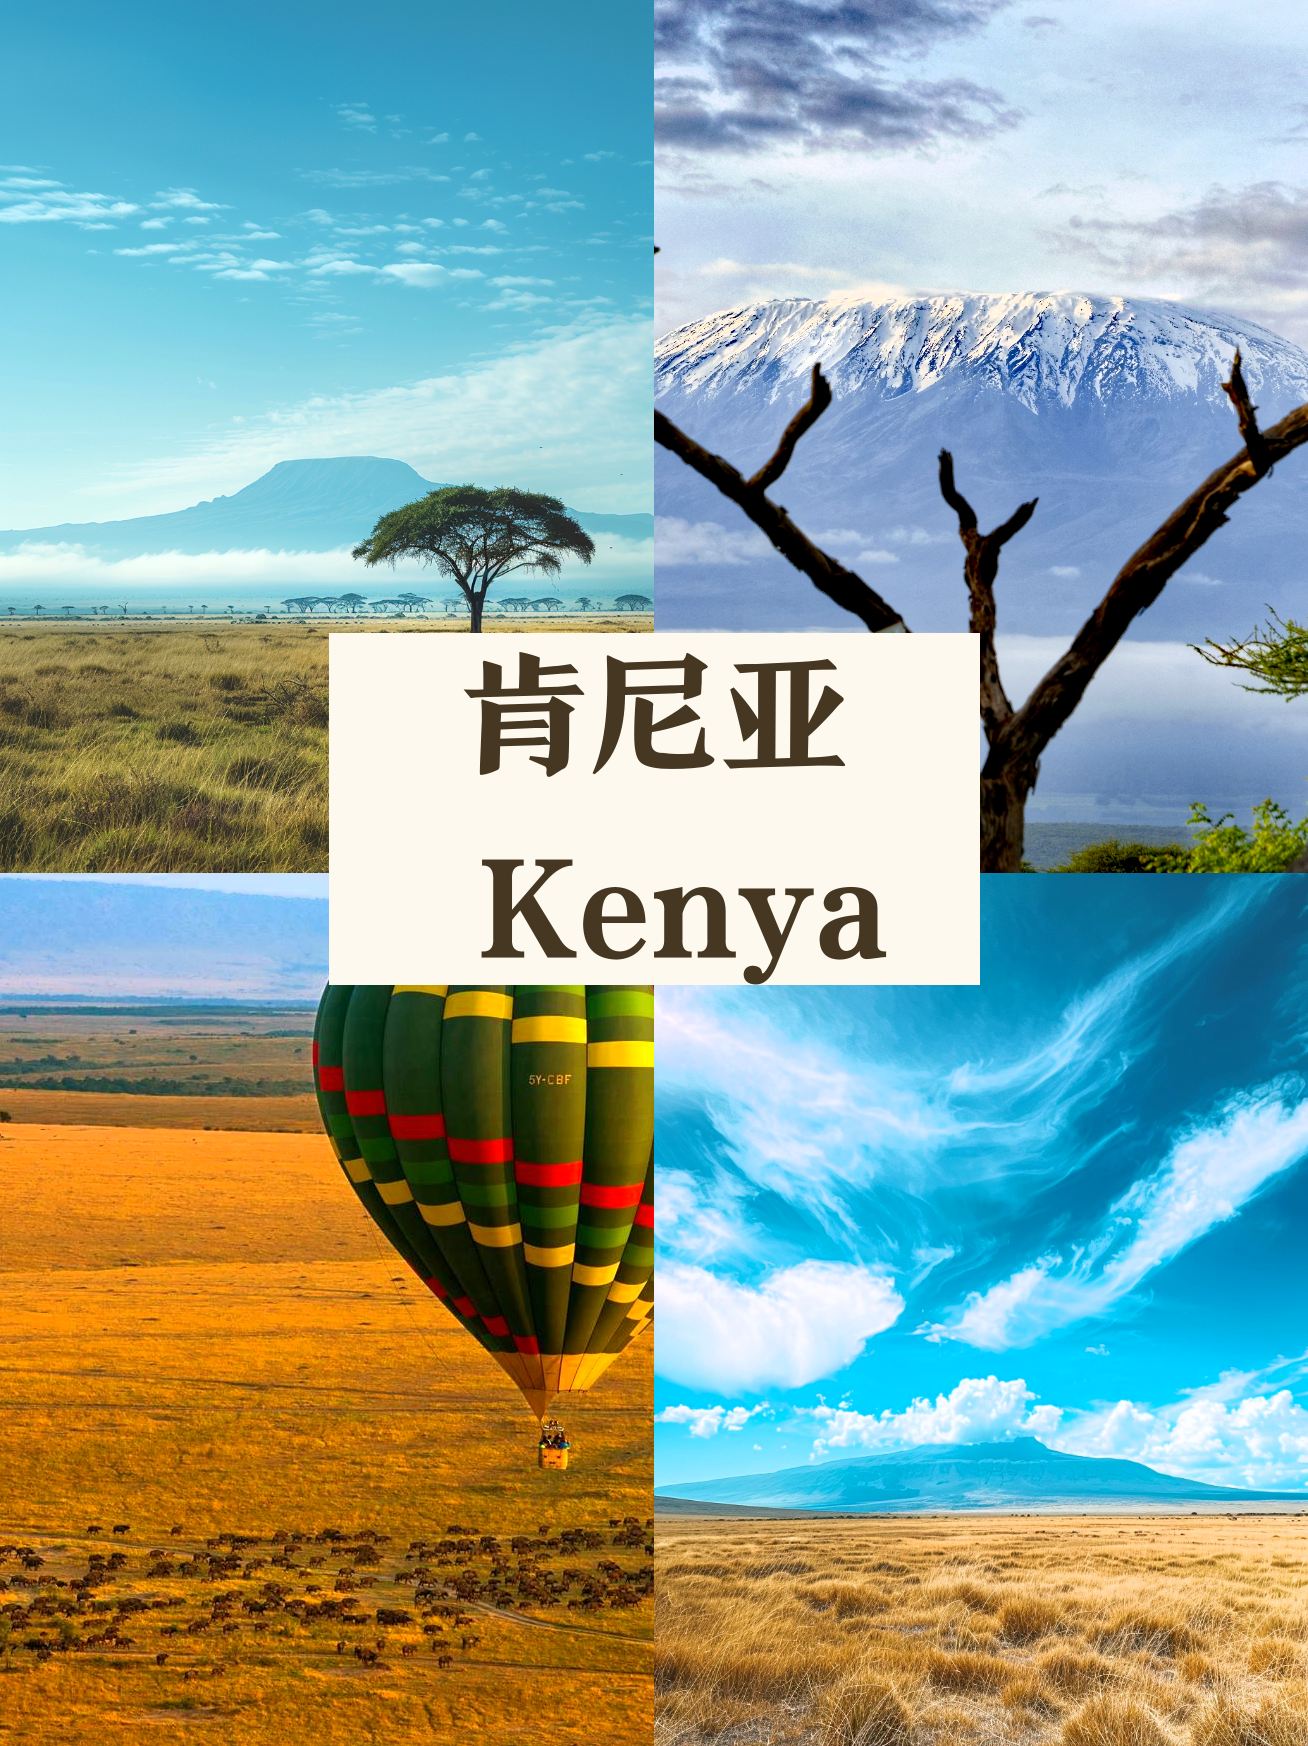 震撼❗肯尼亚旅行 这些你一定不知道😲